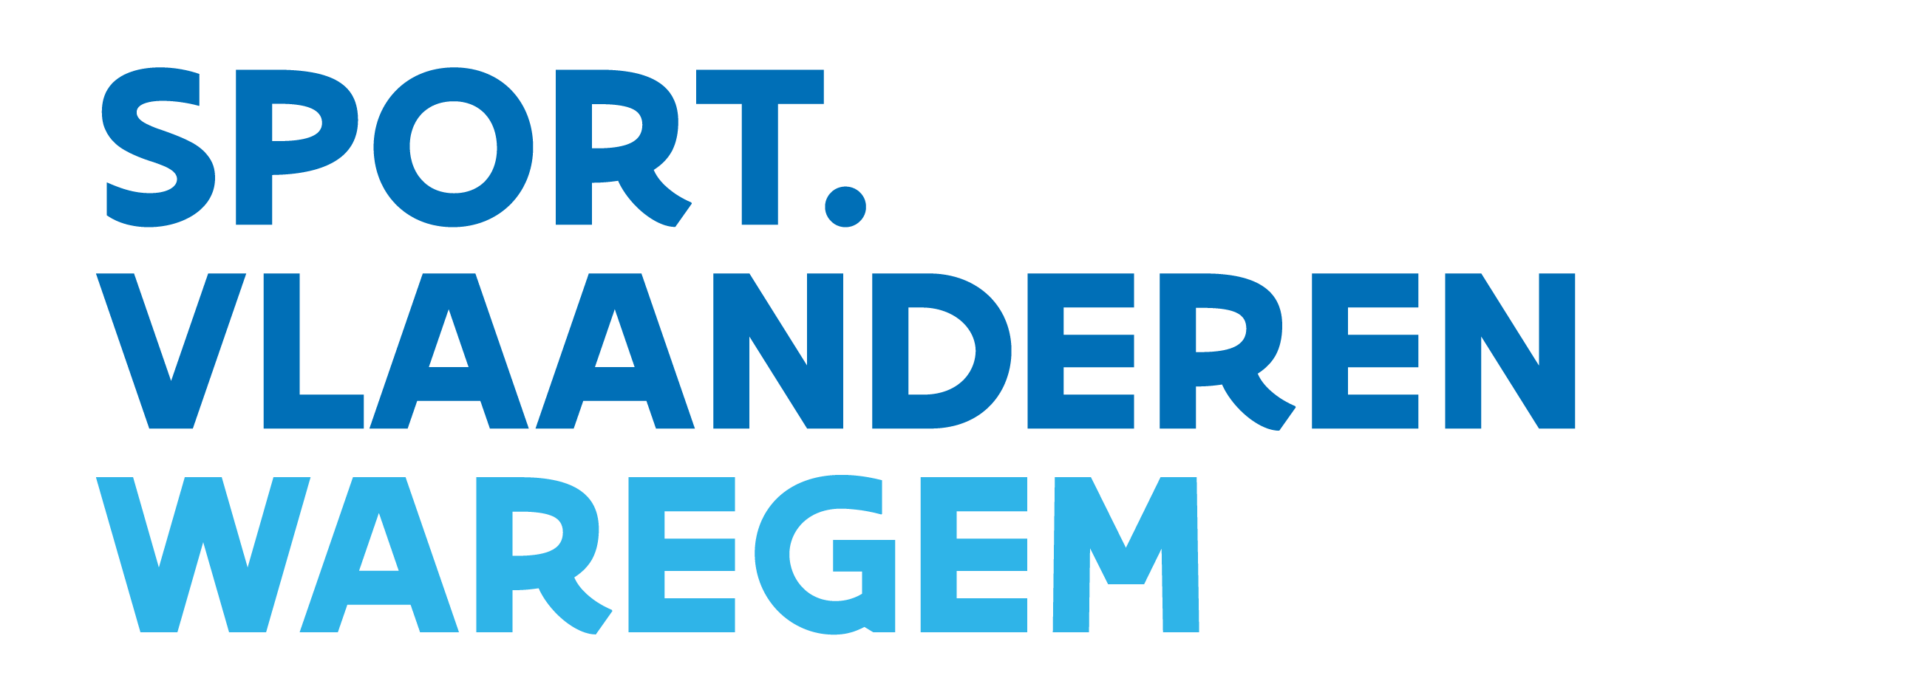 Sport Vlaanderen Waregem